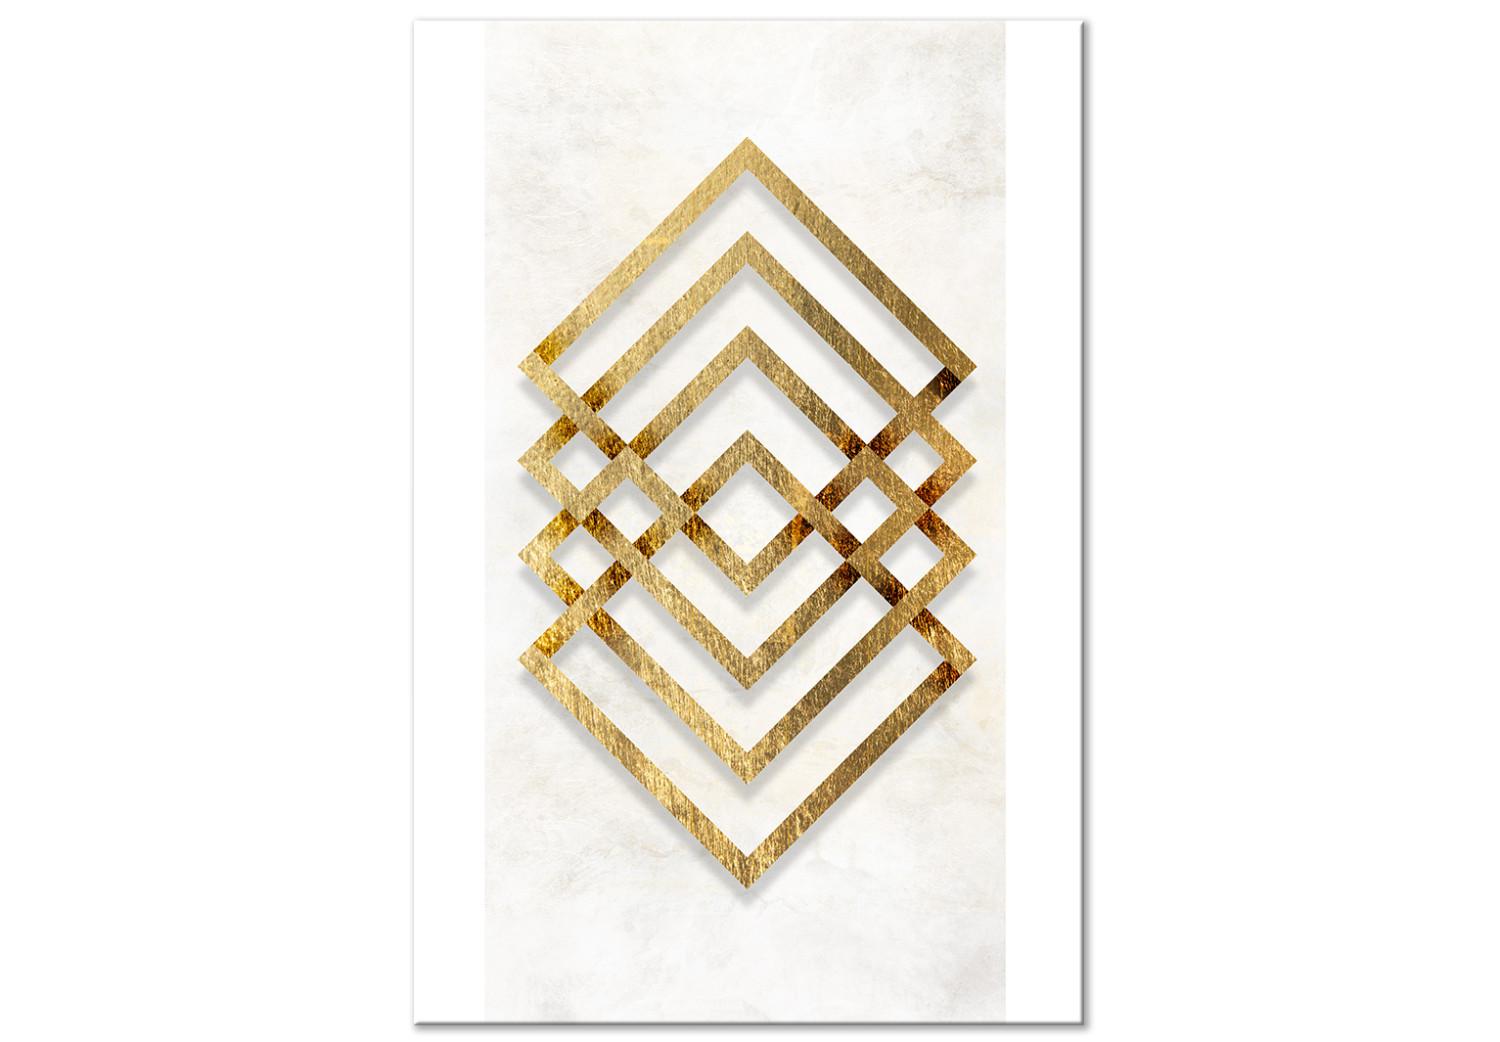 Cuadro Simetría de la abstracción (1 pieza) - formas geométricas en dorado